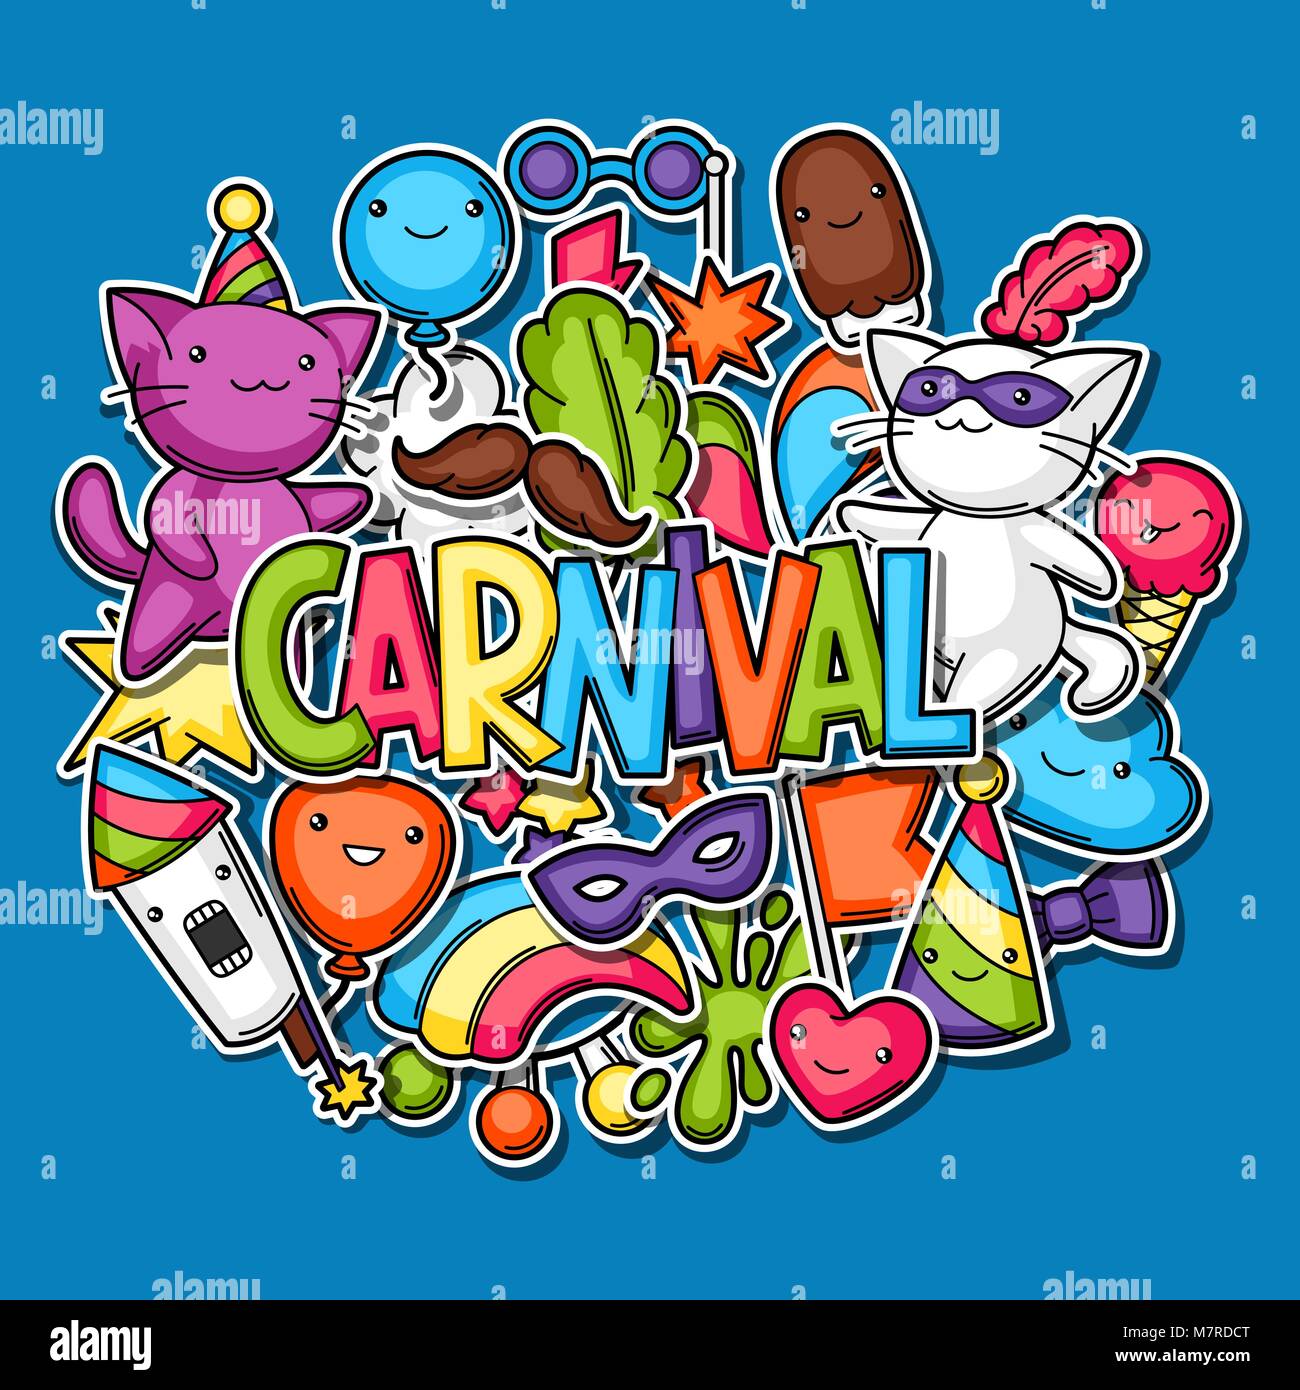 Karneval Party kawaii Hintergrund. Süße Aufkleber Katzen, Dekorationen für Feiern, Objekte und Symbole Stock Vektor